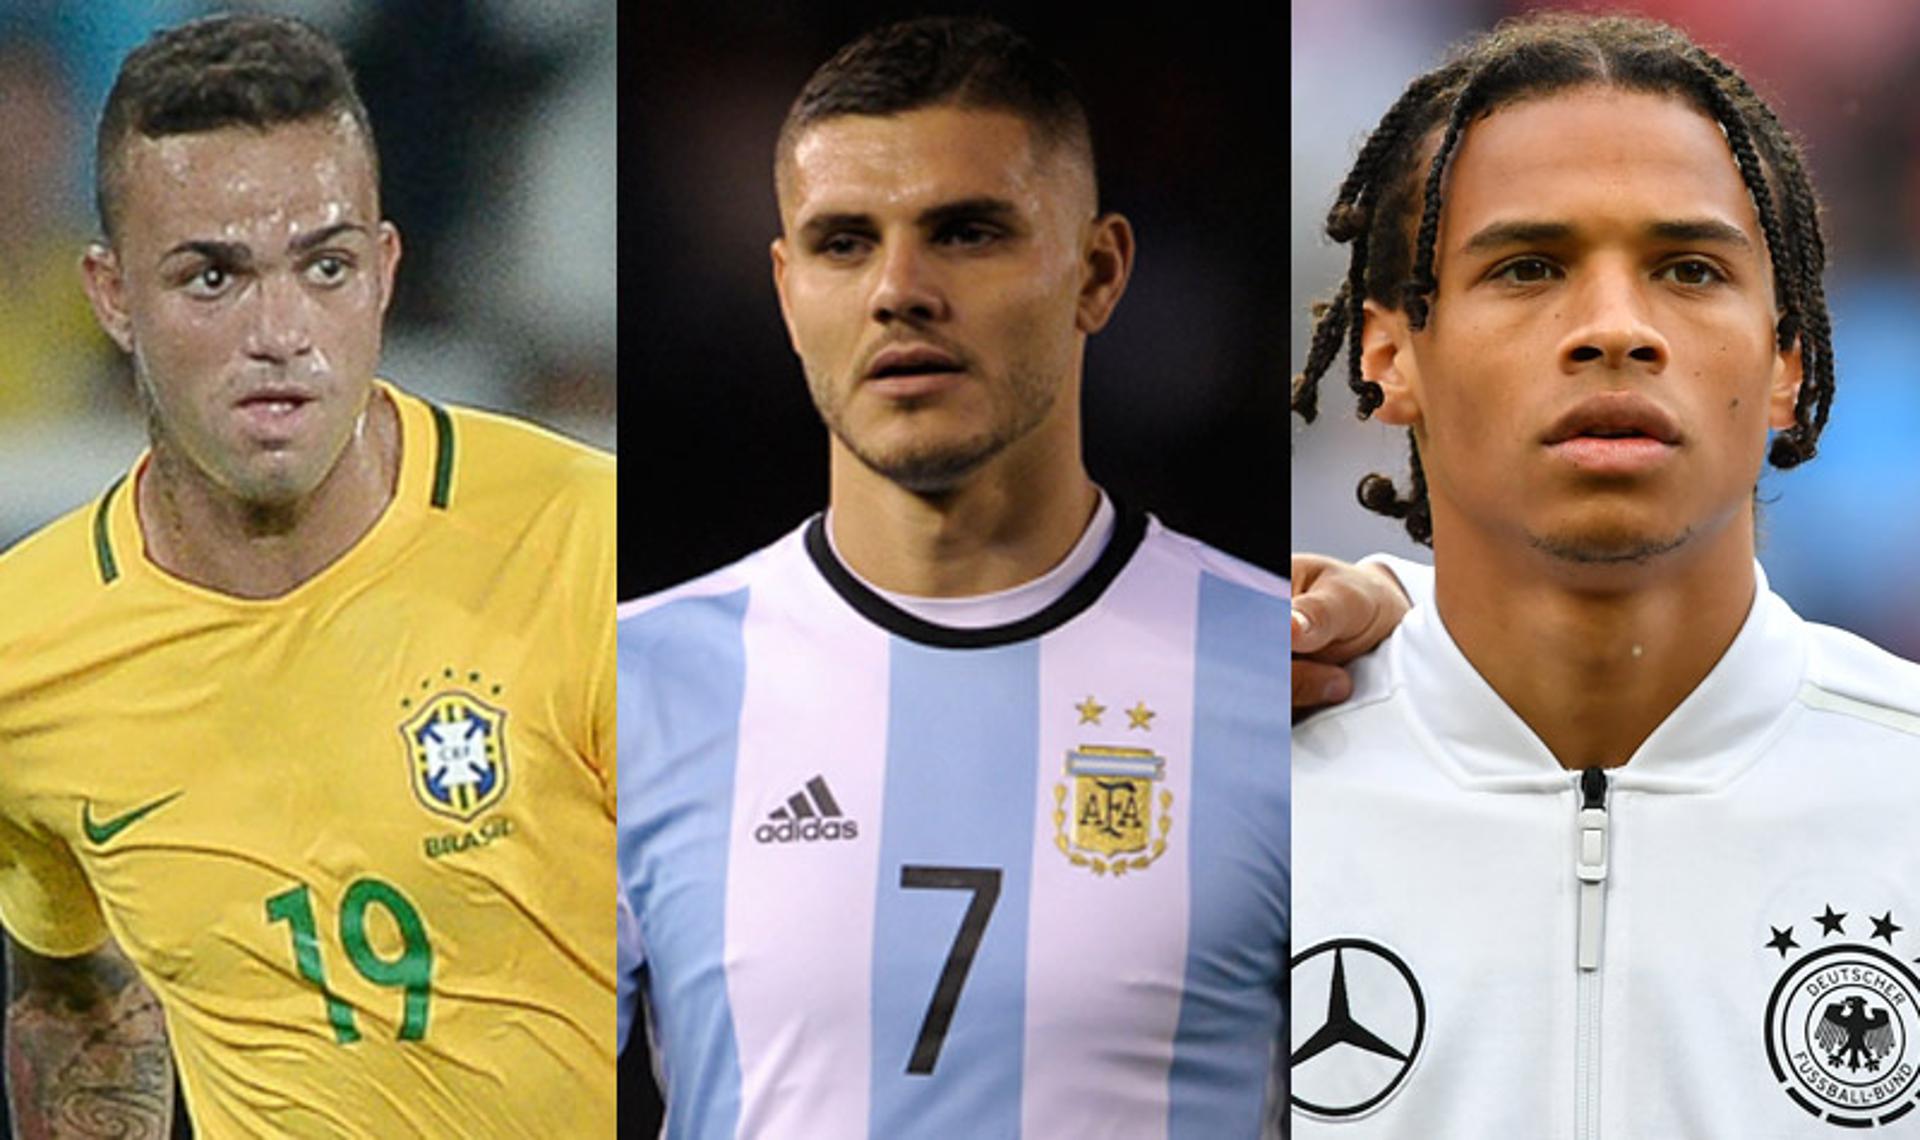 Luan (Brasil), Mauro Icardi (Argentina) e&nbsp;Leroy Sané (Alemanha) são alguns nomes em alta no futebol mundial que estão fora da Copa por opção técnica. Veja na galeria abaixo os 20 principais jogadores da lista dos ausentes